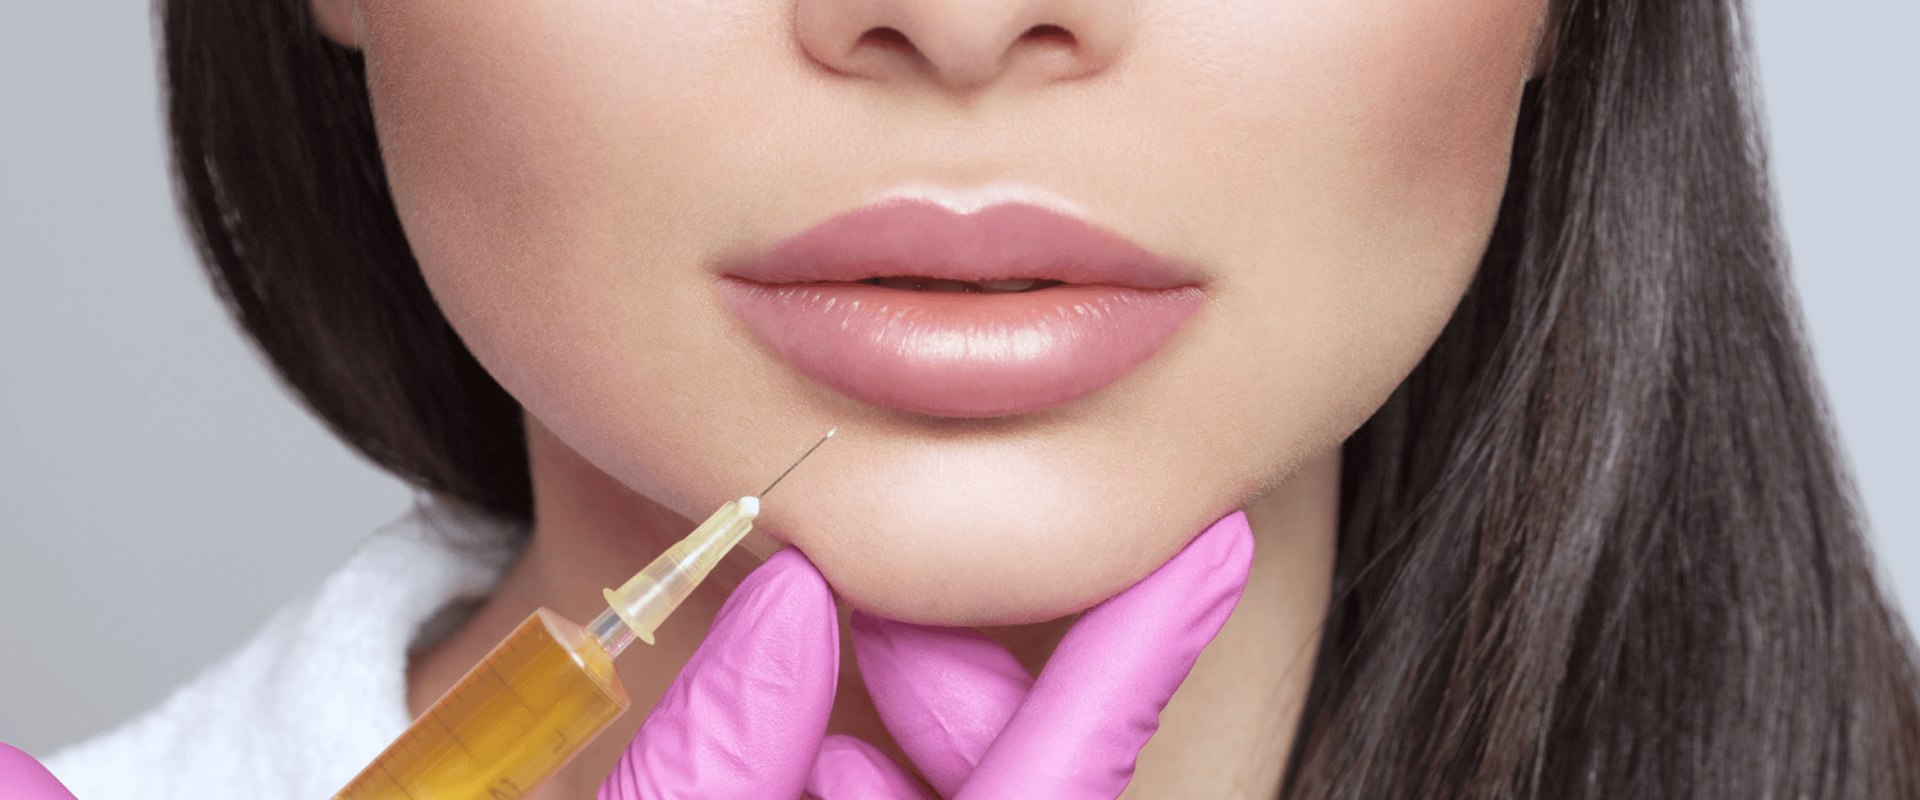 Qué es mejor para los labios juvederm o restylane?